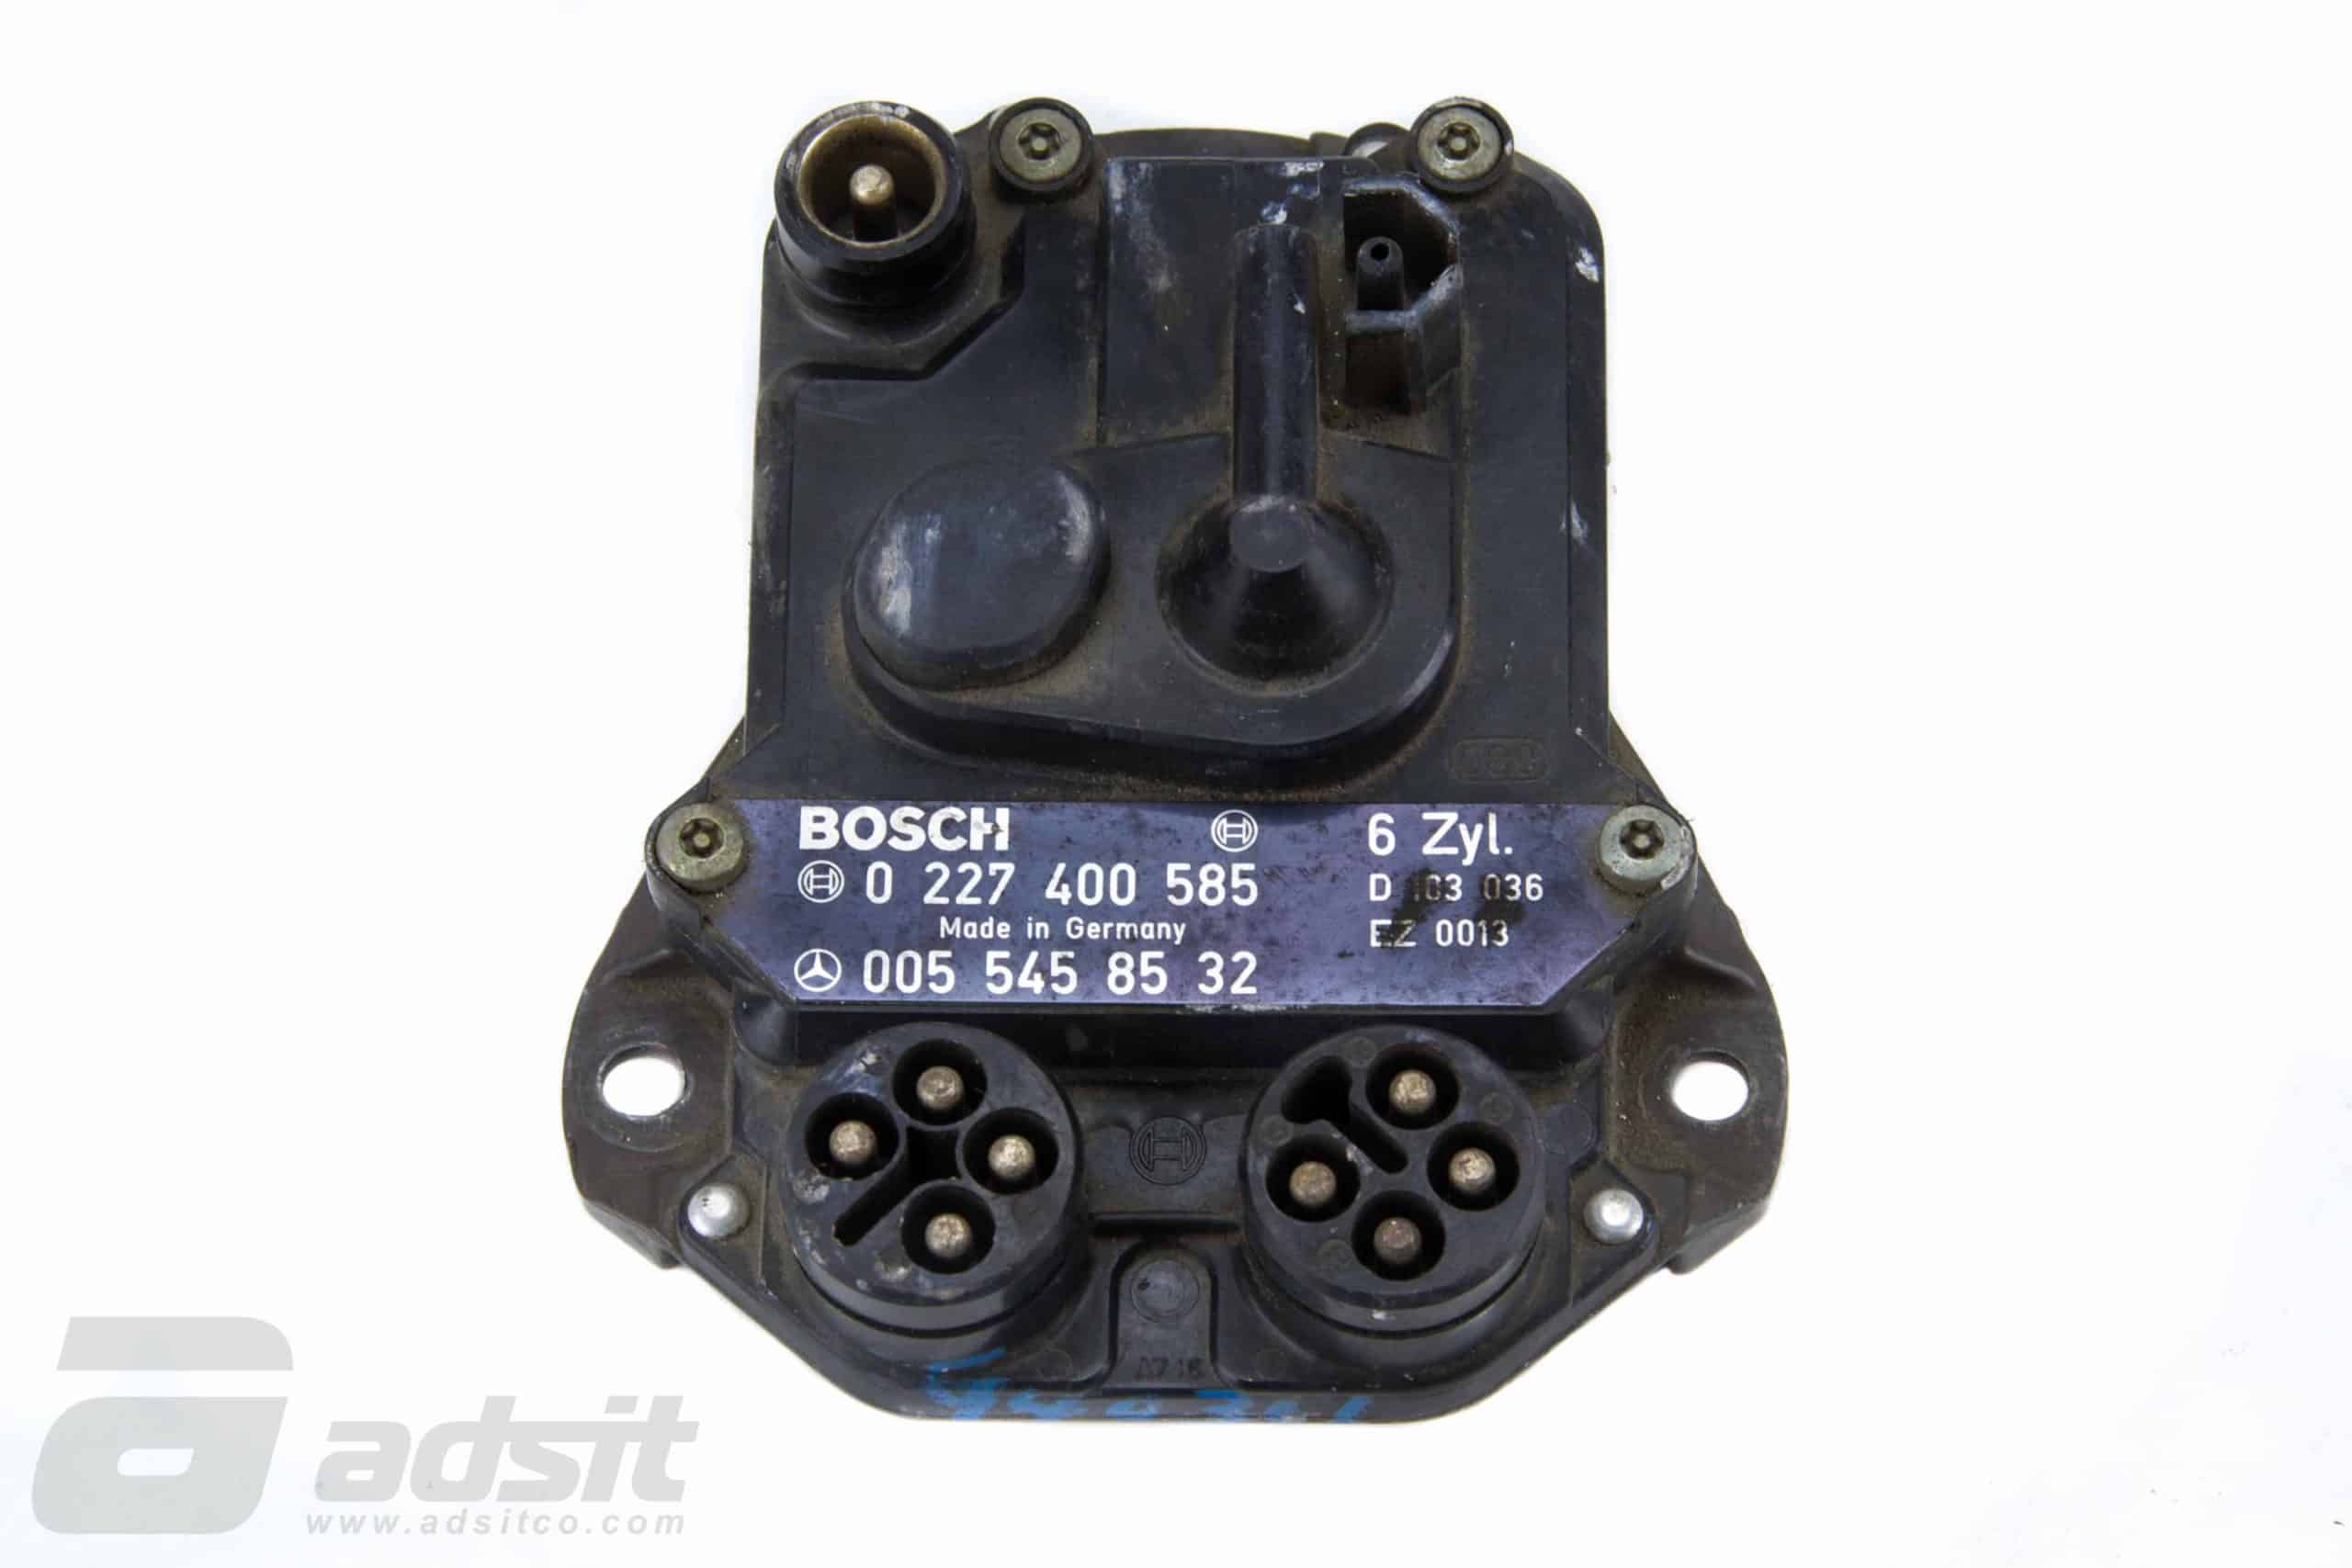 Bosch Ignition Control Unit